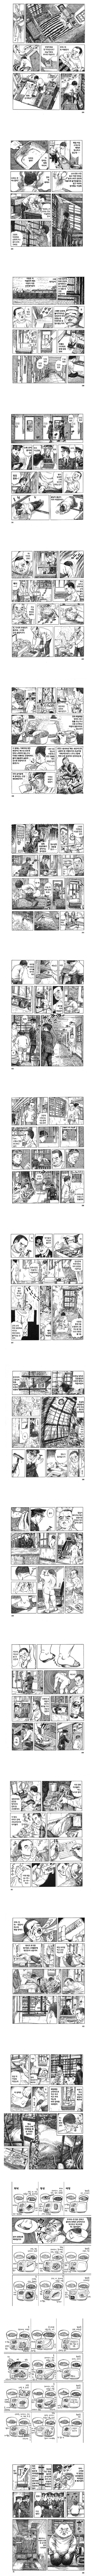 일본 교도소 경험자가 그린 만화